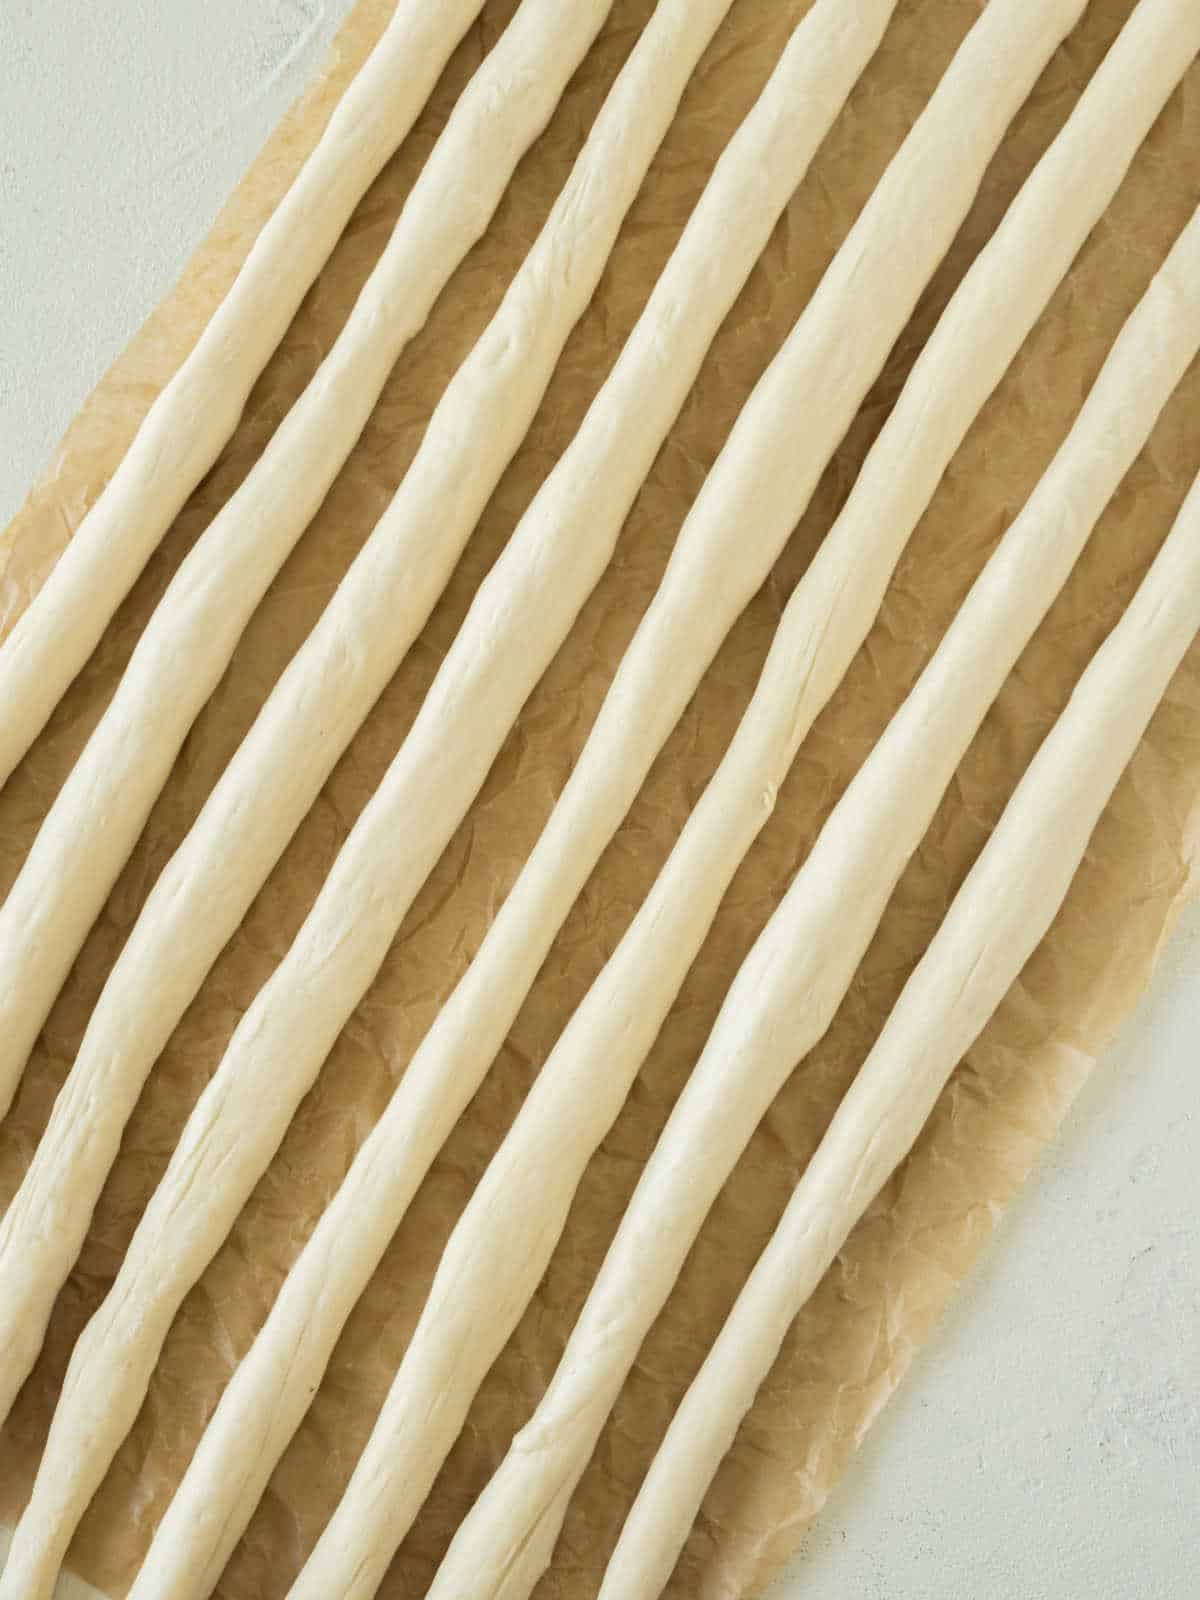 Thin ropes of pretzel dough on beige parchment paper.